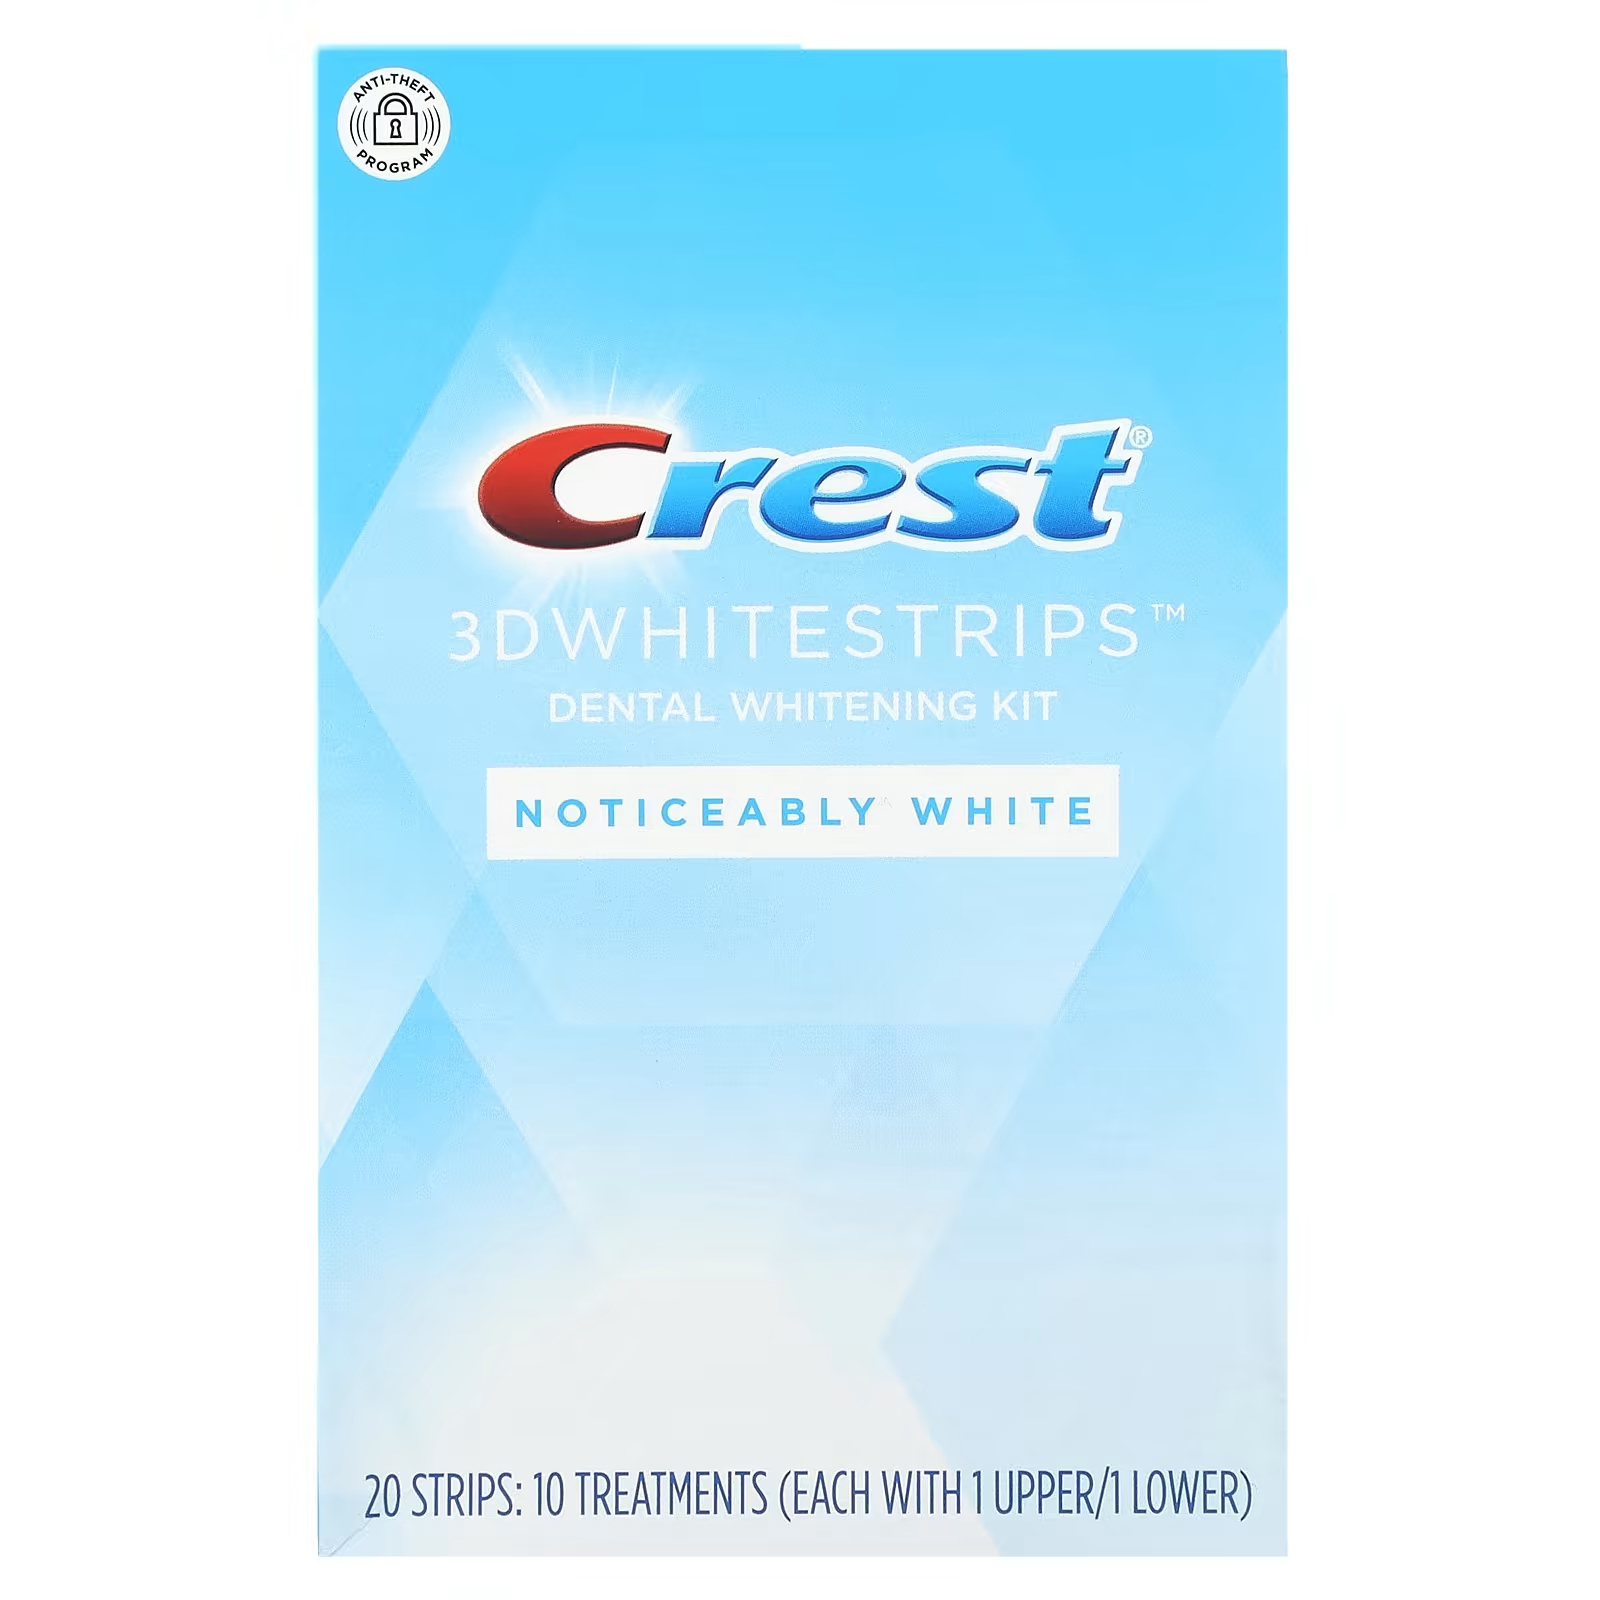 Набор для отбеливания зубов Crest 3D Whitestrips заметный белый цвет, 20 шт. набор для отбеливания зубов crest 3d white